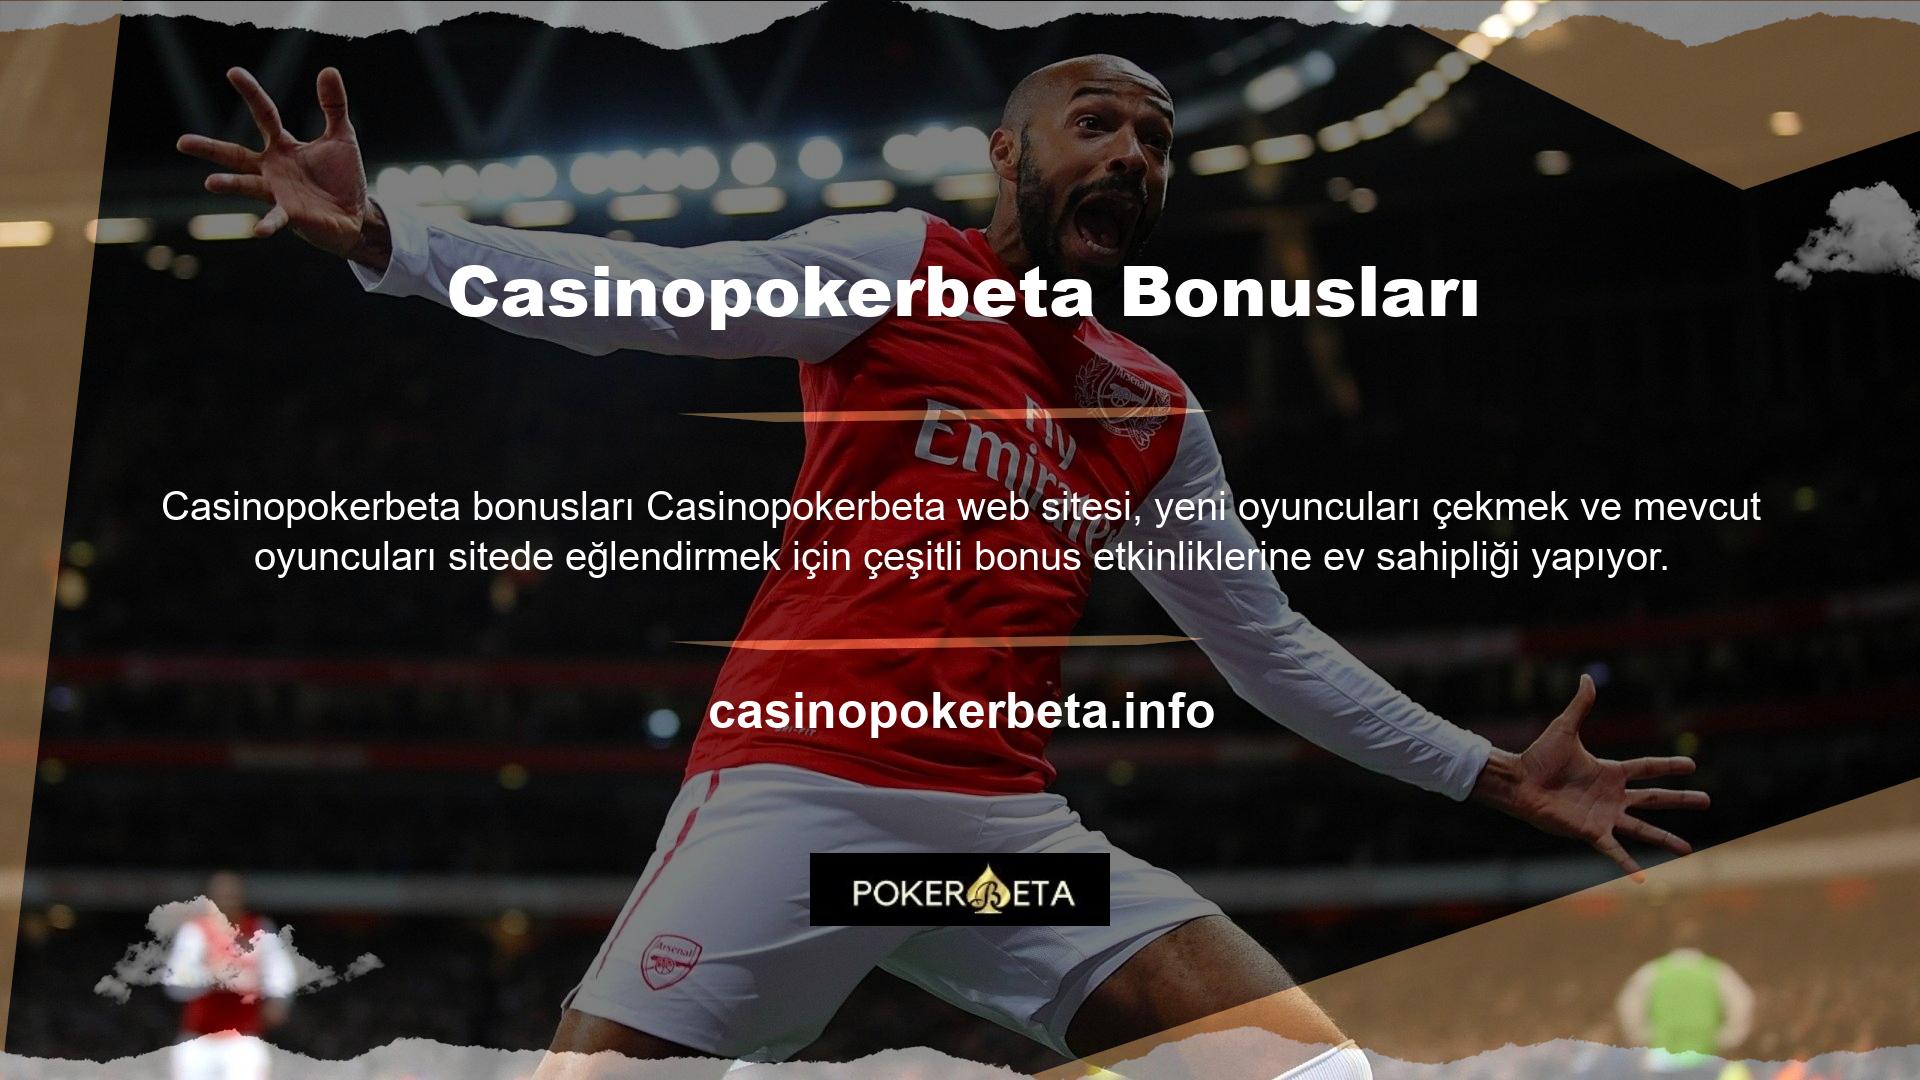 Site çok cömert bonuslar sunuyor, yeni oyunculara sırasıyla spor bahisleri ve casino oyunları için hoş geldin bonusları sunuyor